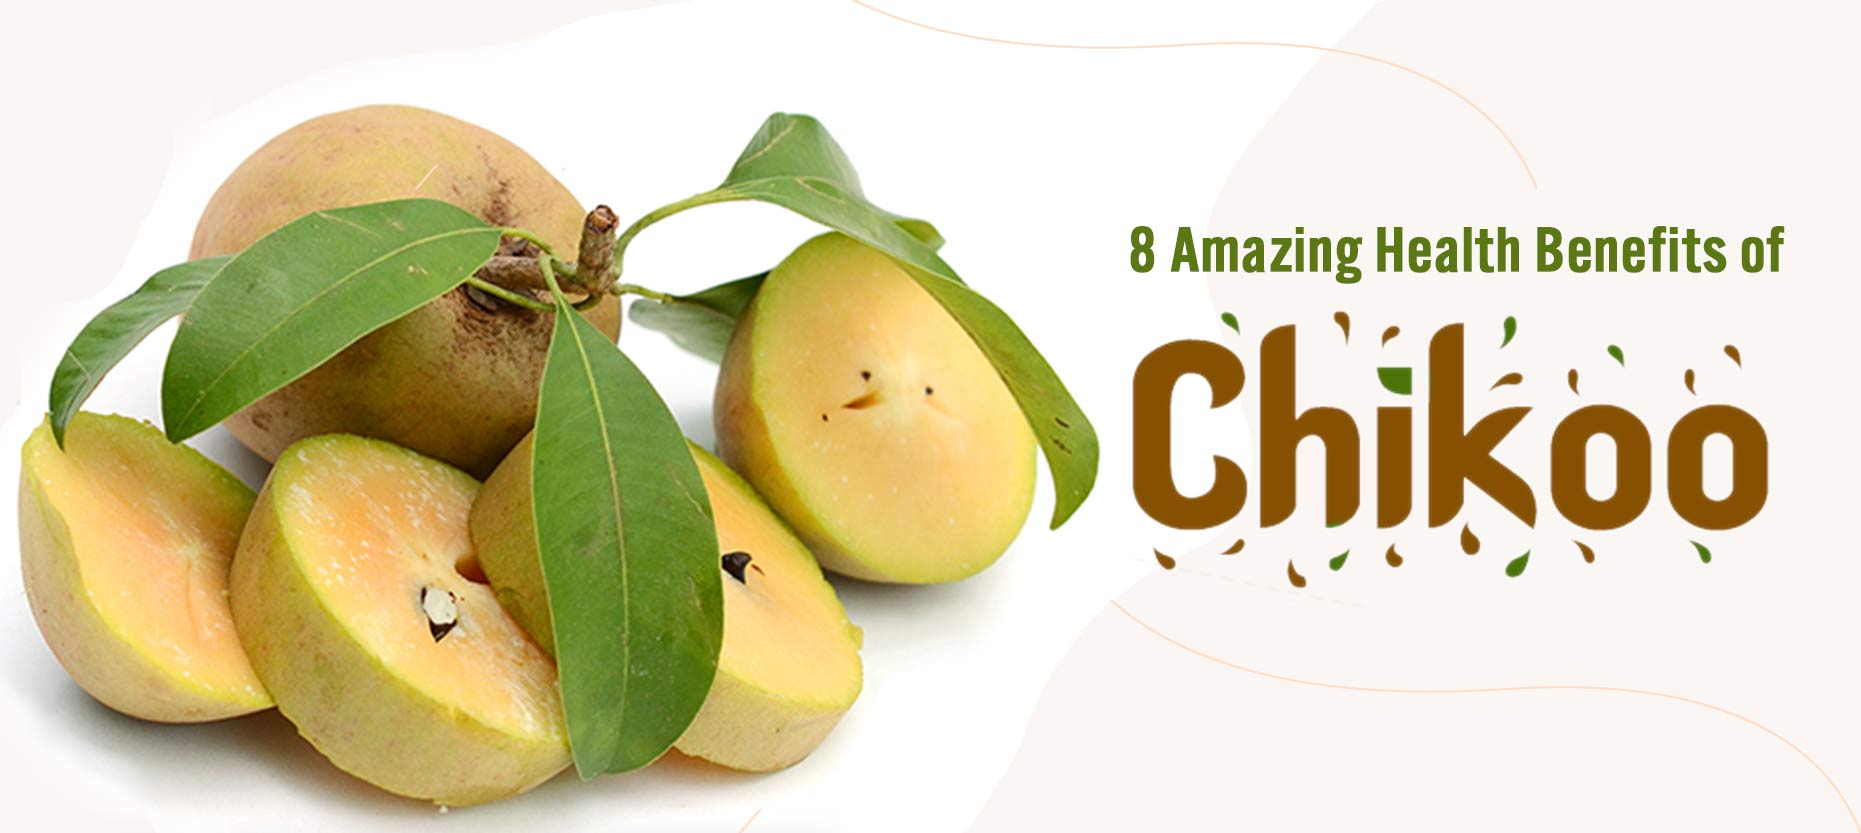 8 Amazing Health Benefits of Chikoo Fruit